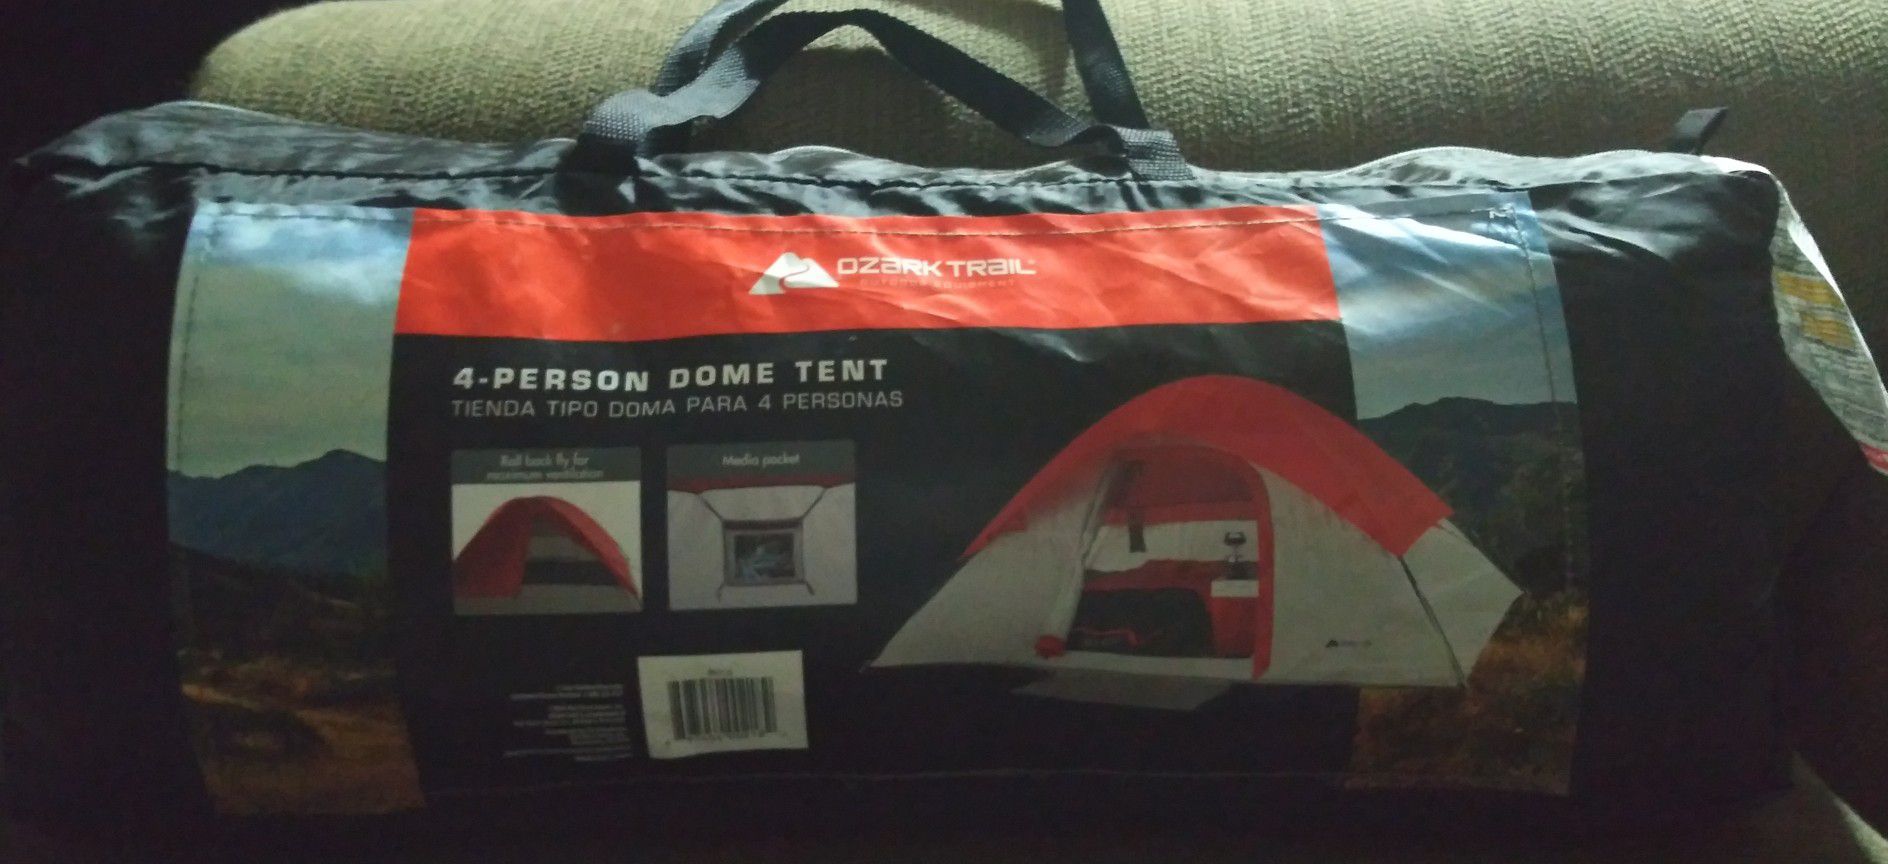 Ozark Trail 4person done tent